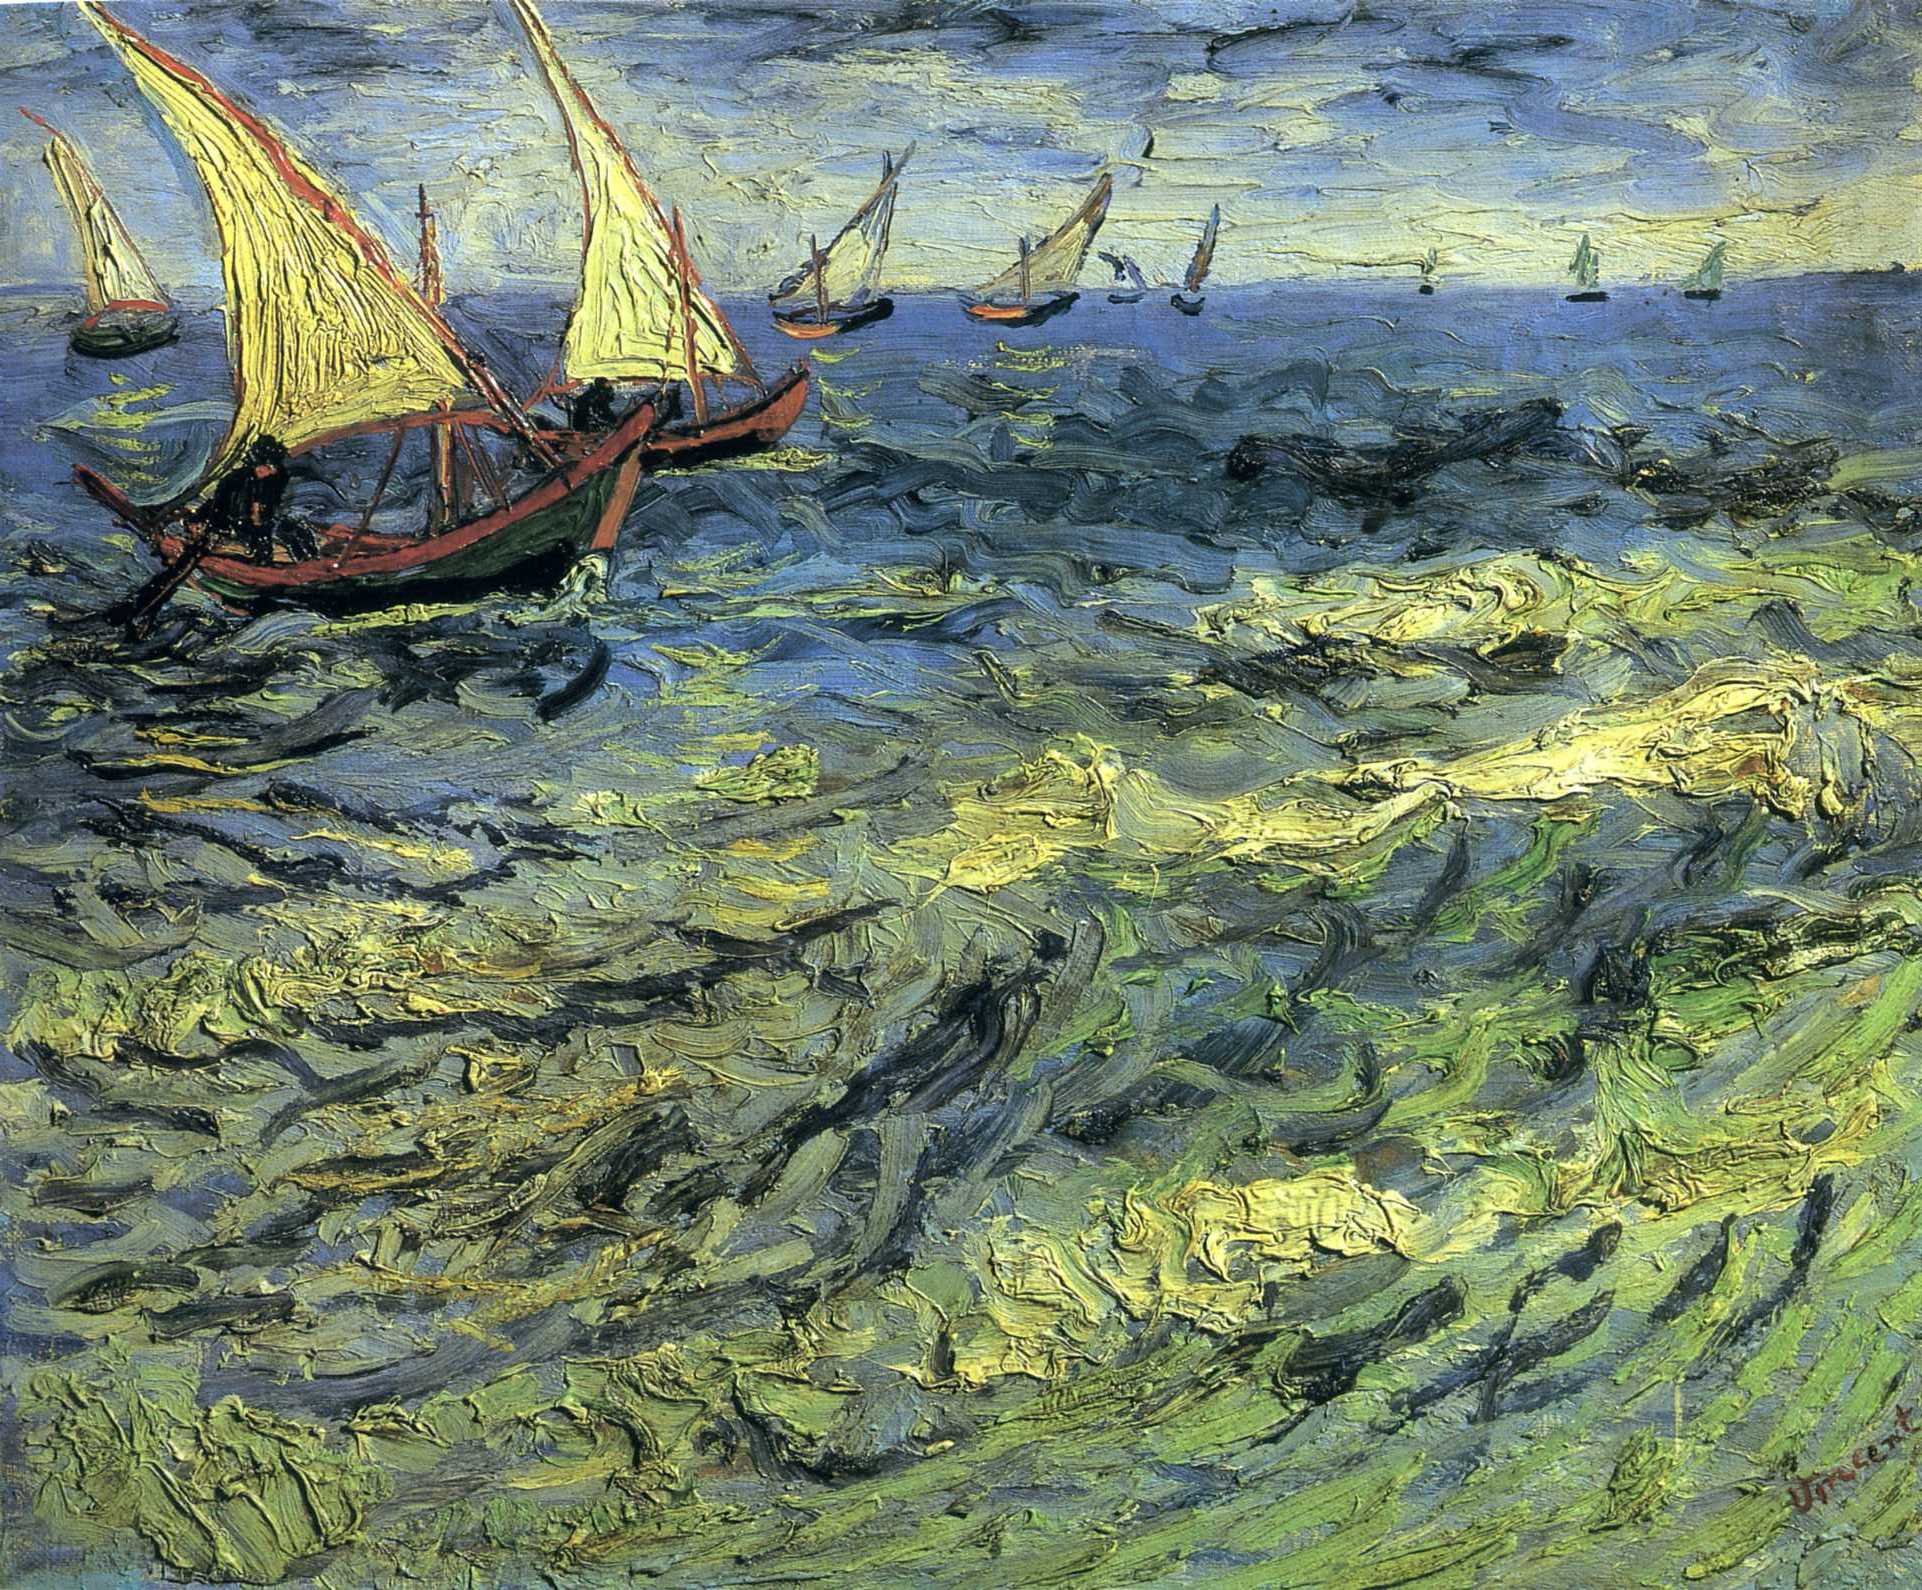 Barcă de pescuit pe mare by Vincent van Gogh - 1888 - 44 x 53 cm 